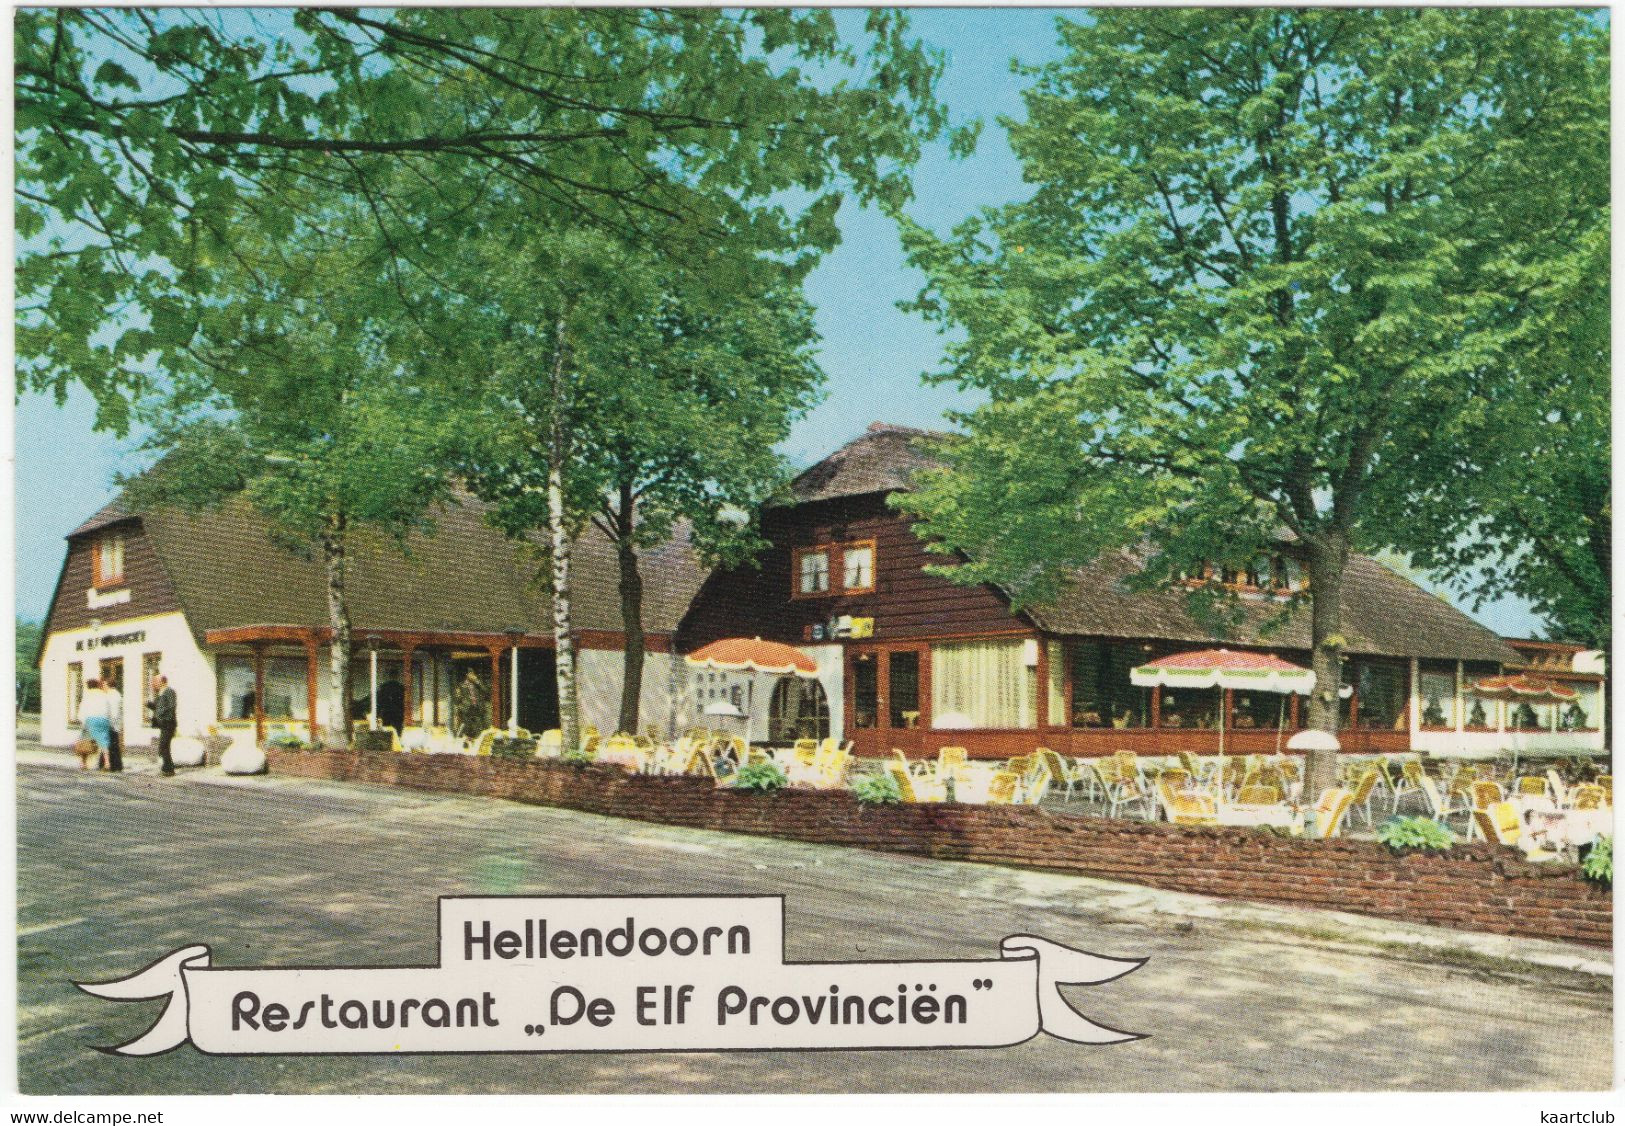 Hellendoorn - Sprookjestuin - Recreatiepark 'De Elf Provinciën' - Restaurant -  (Overijssel - Nederland) - L 2608 - Hellendoorn